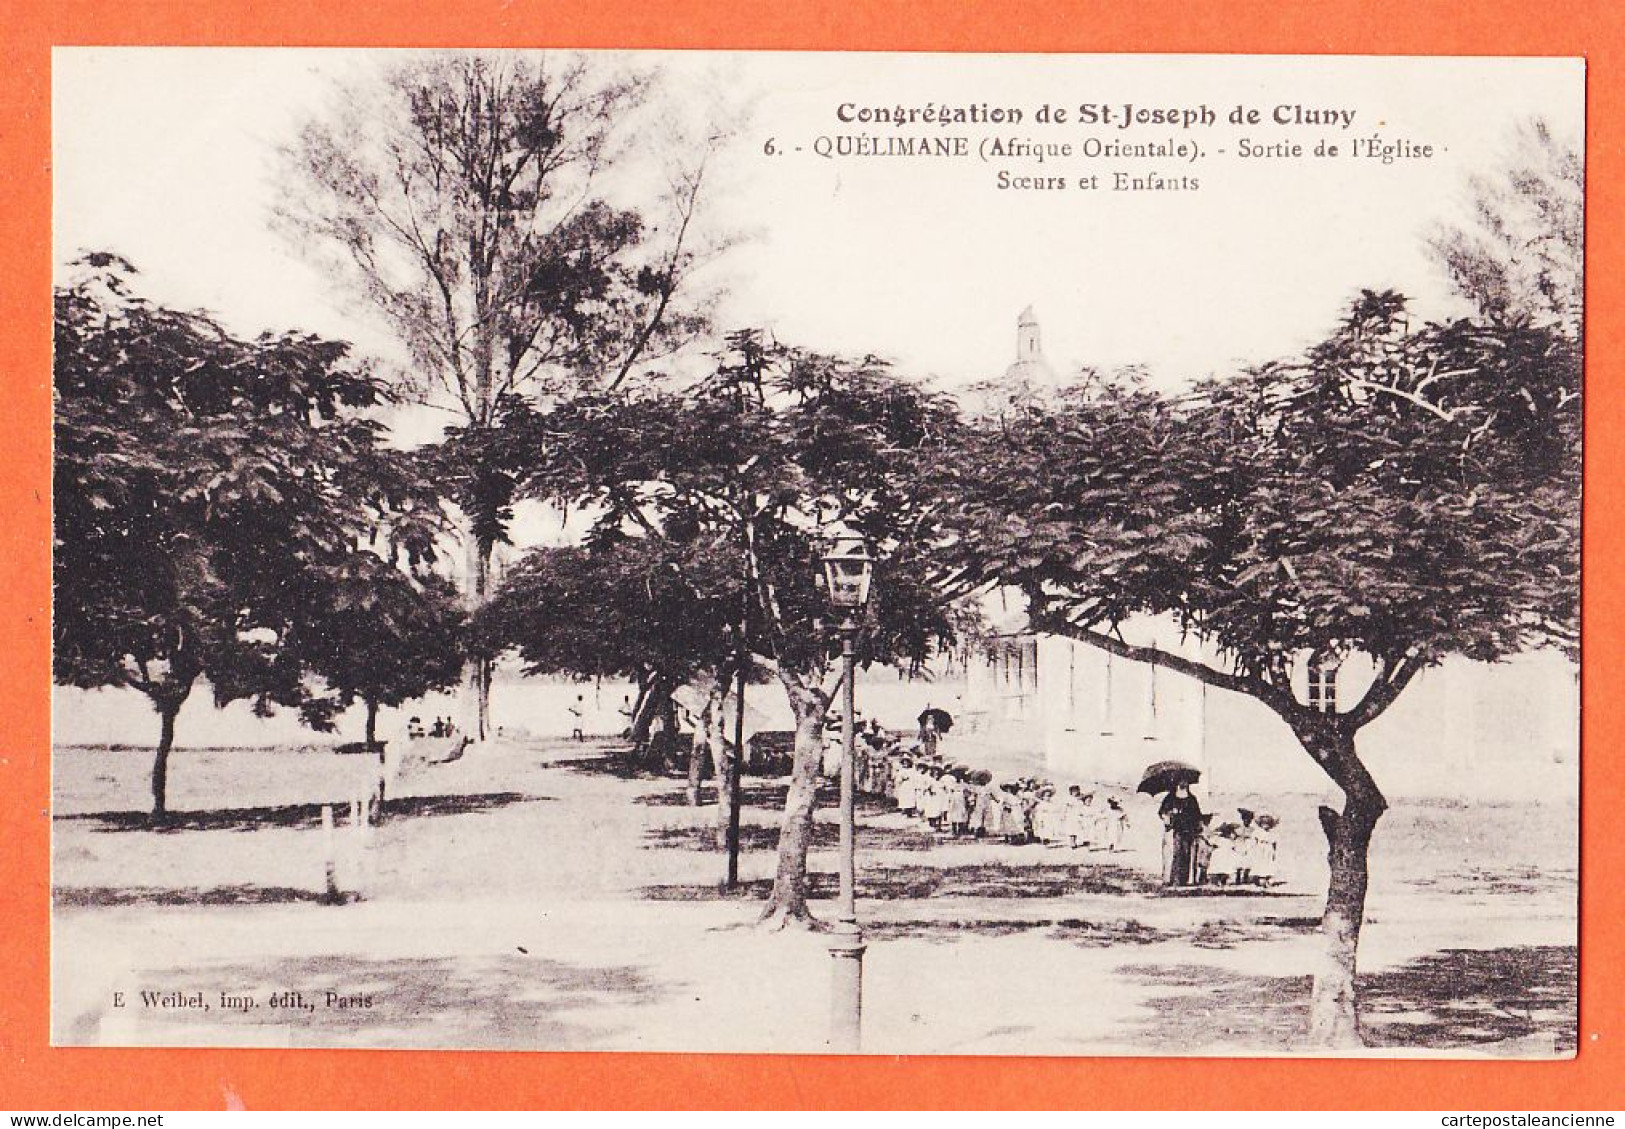 08010 ● QUELIMANE Mozambique Sortie Eglise Soeurs Congrégation SAINT-JOSEPH CLUNY 1925- WEIBEL 6 St - Mosambik